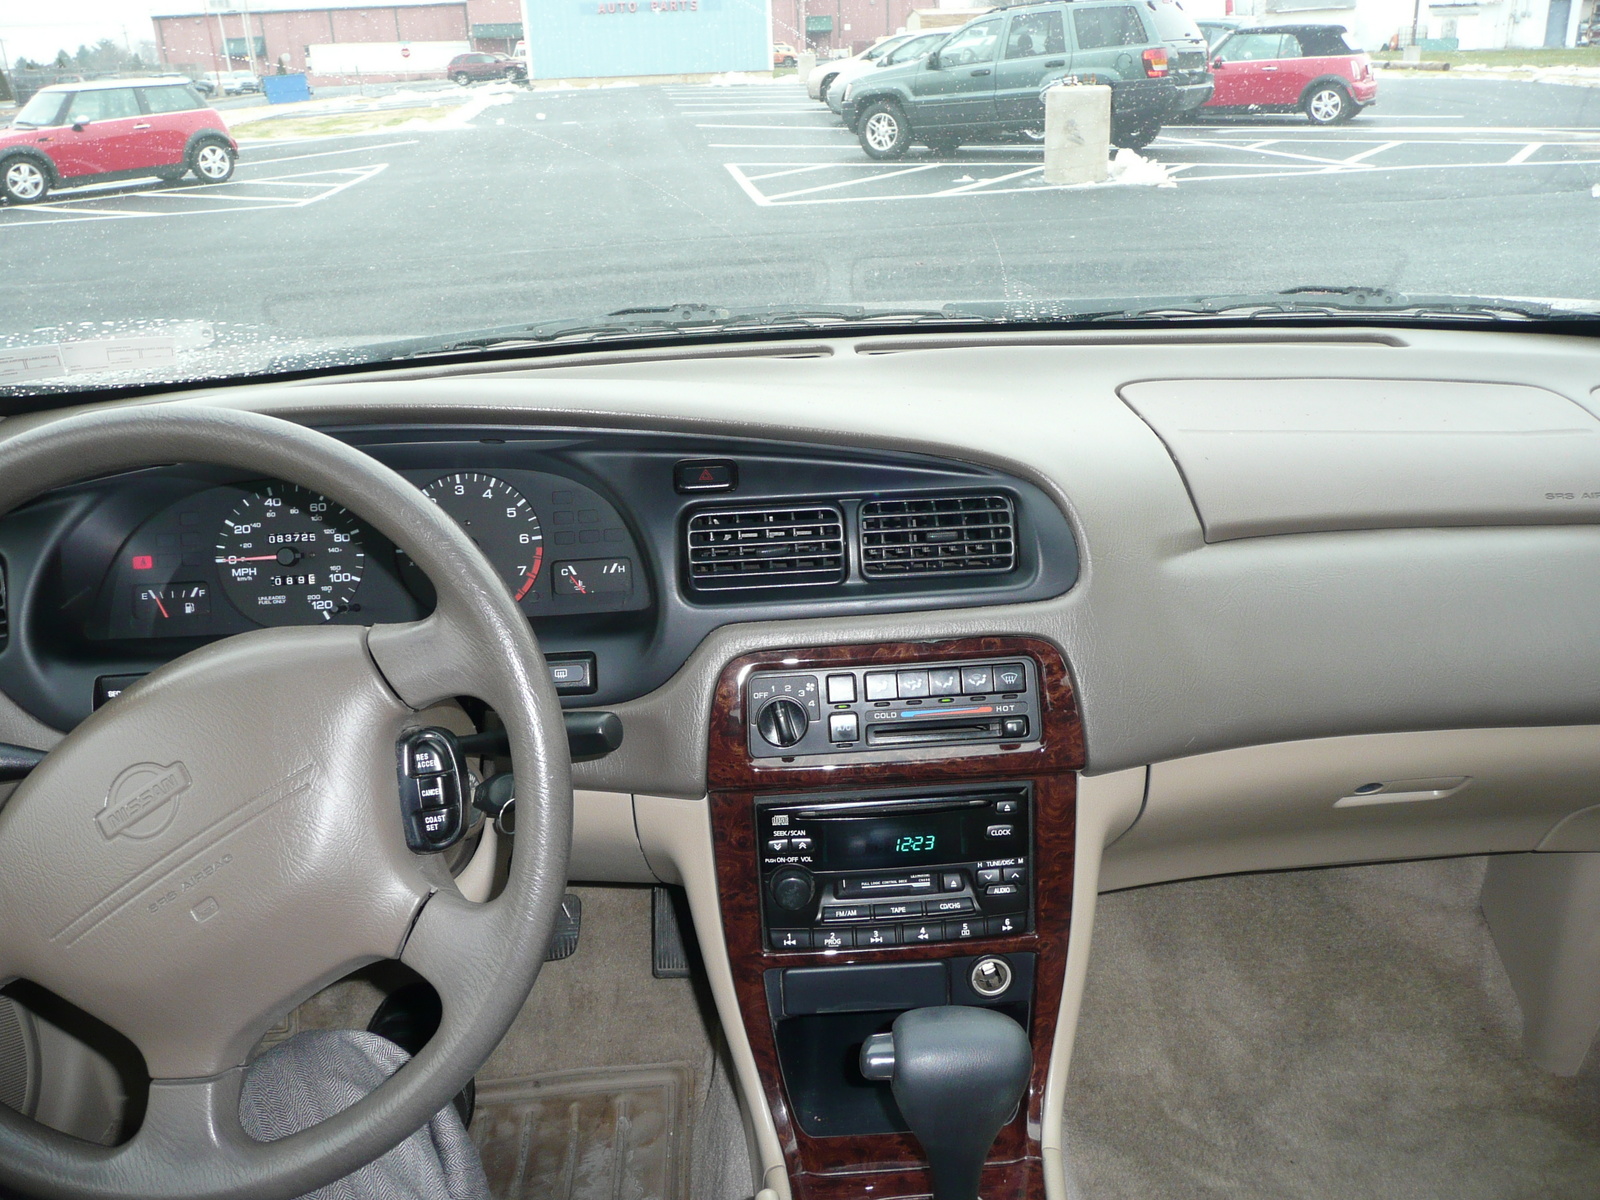 1999 Nissan altima interior dimensions #3